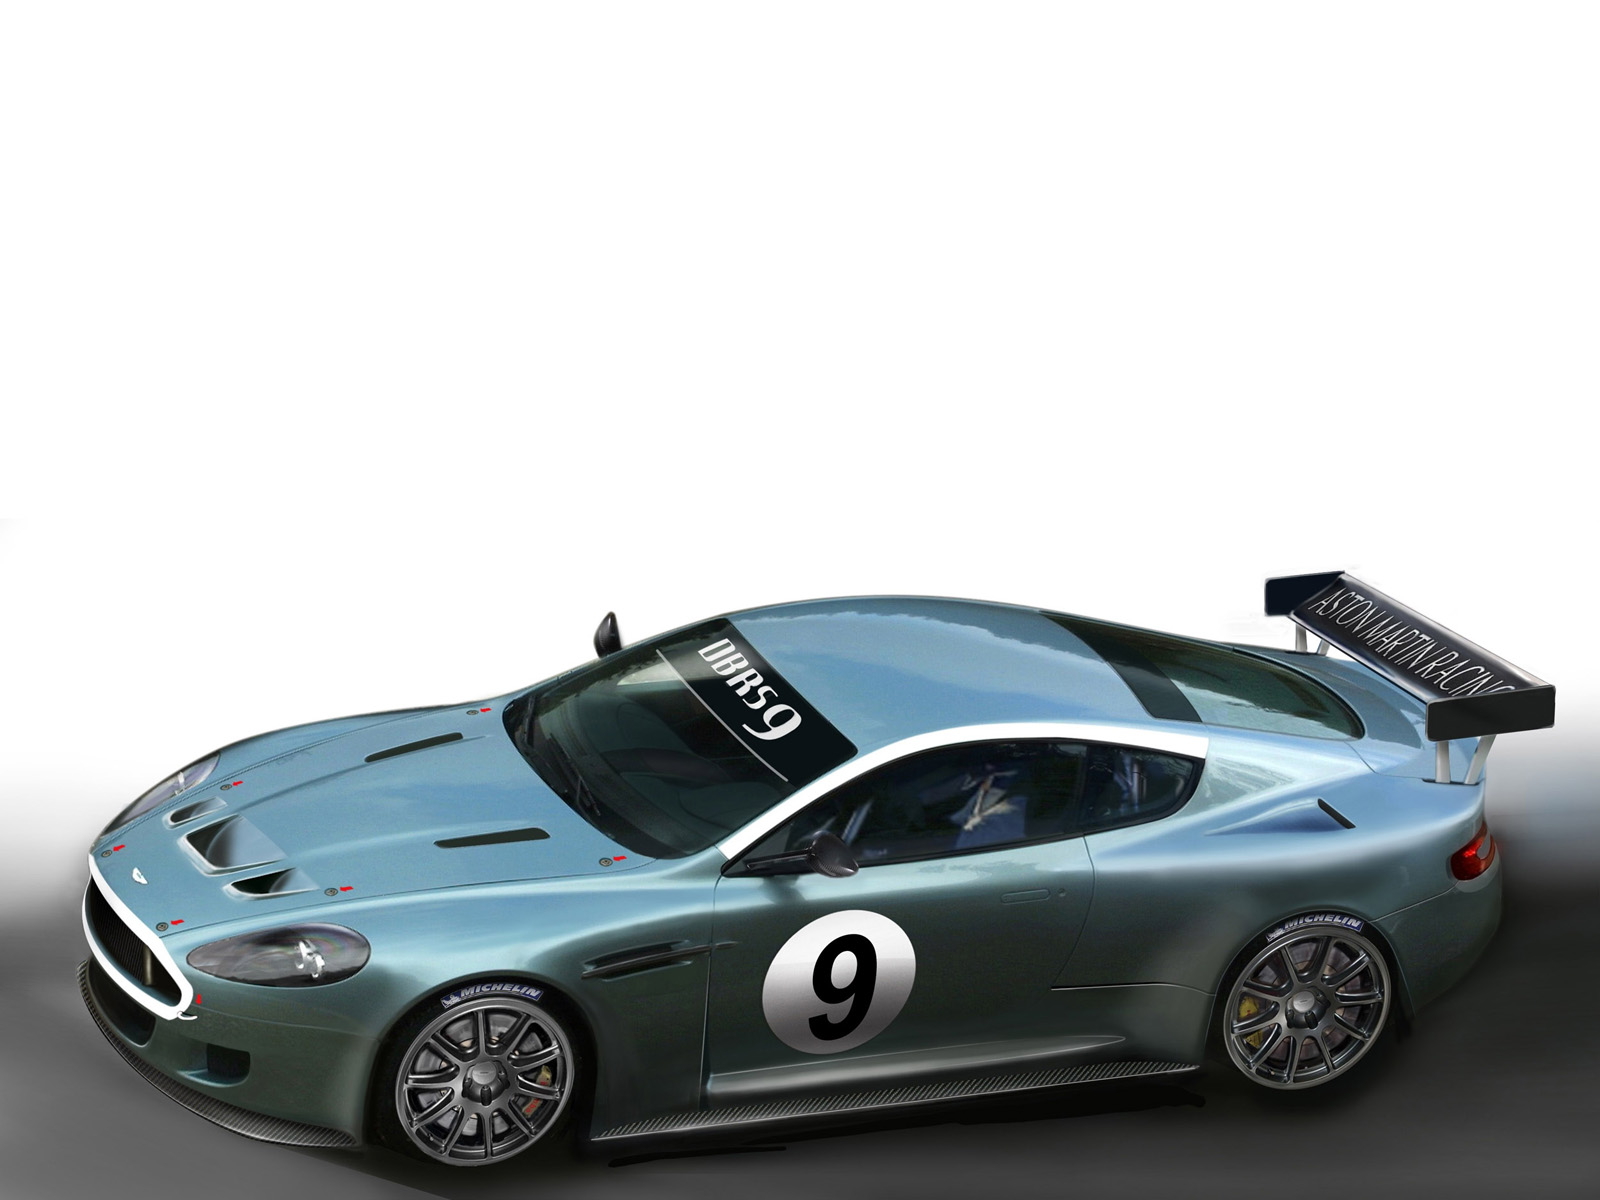 Aston Martin DBRS-9